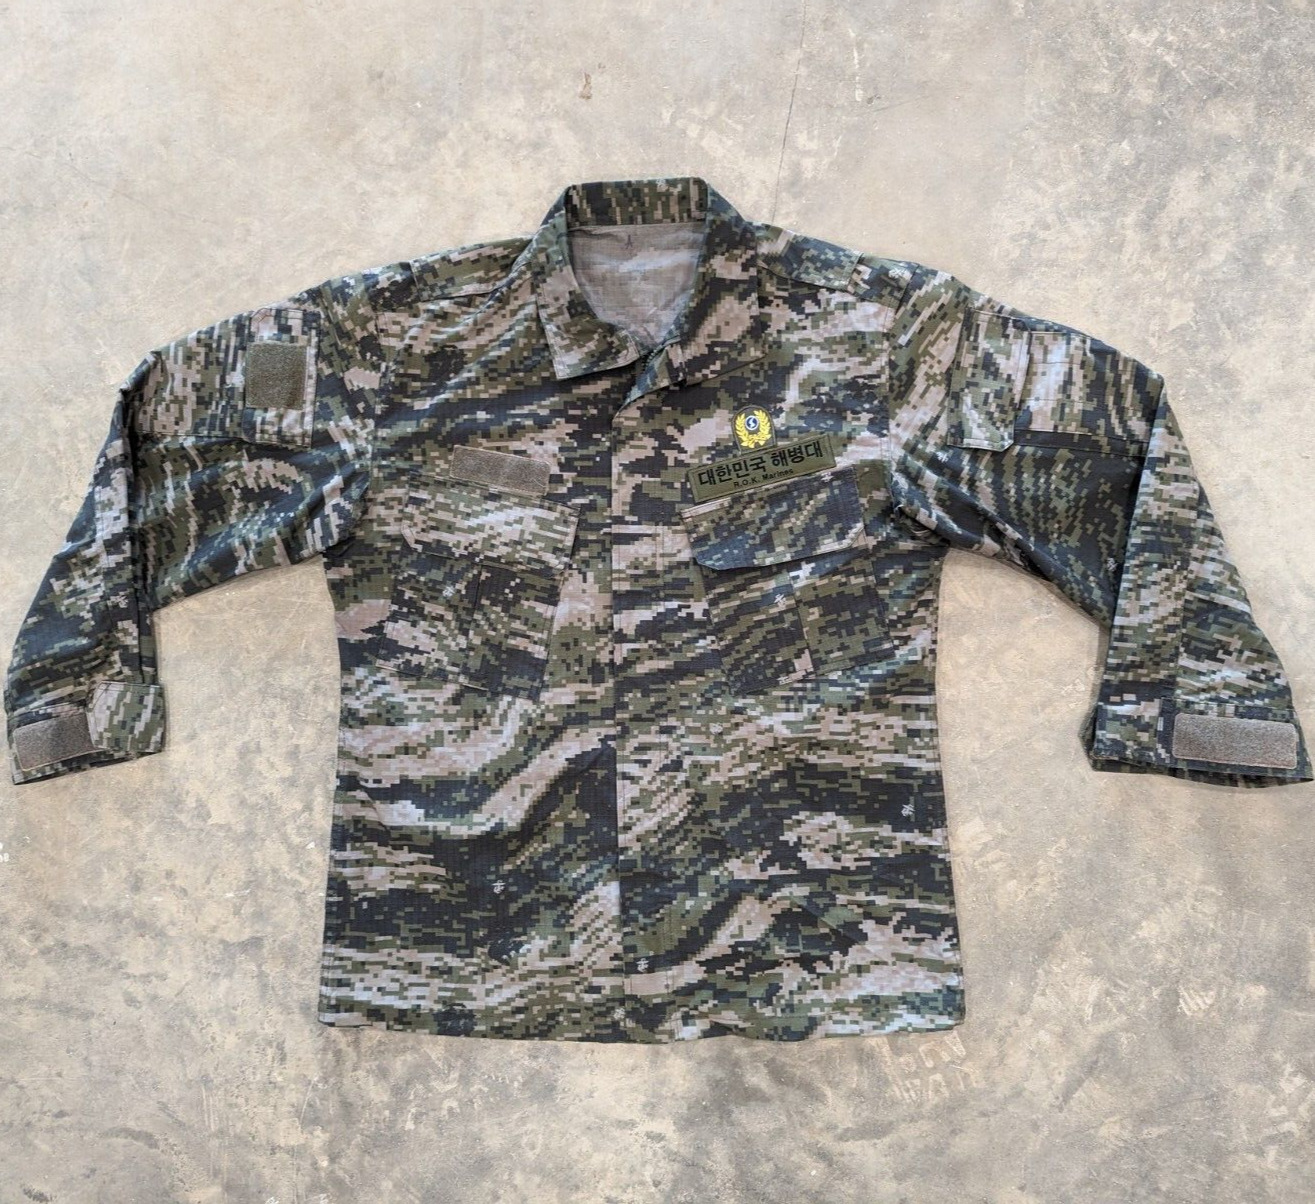 South Korea ROK Marine Corps Tiger Digital Camo Uniform Shirt Field